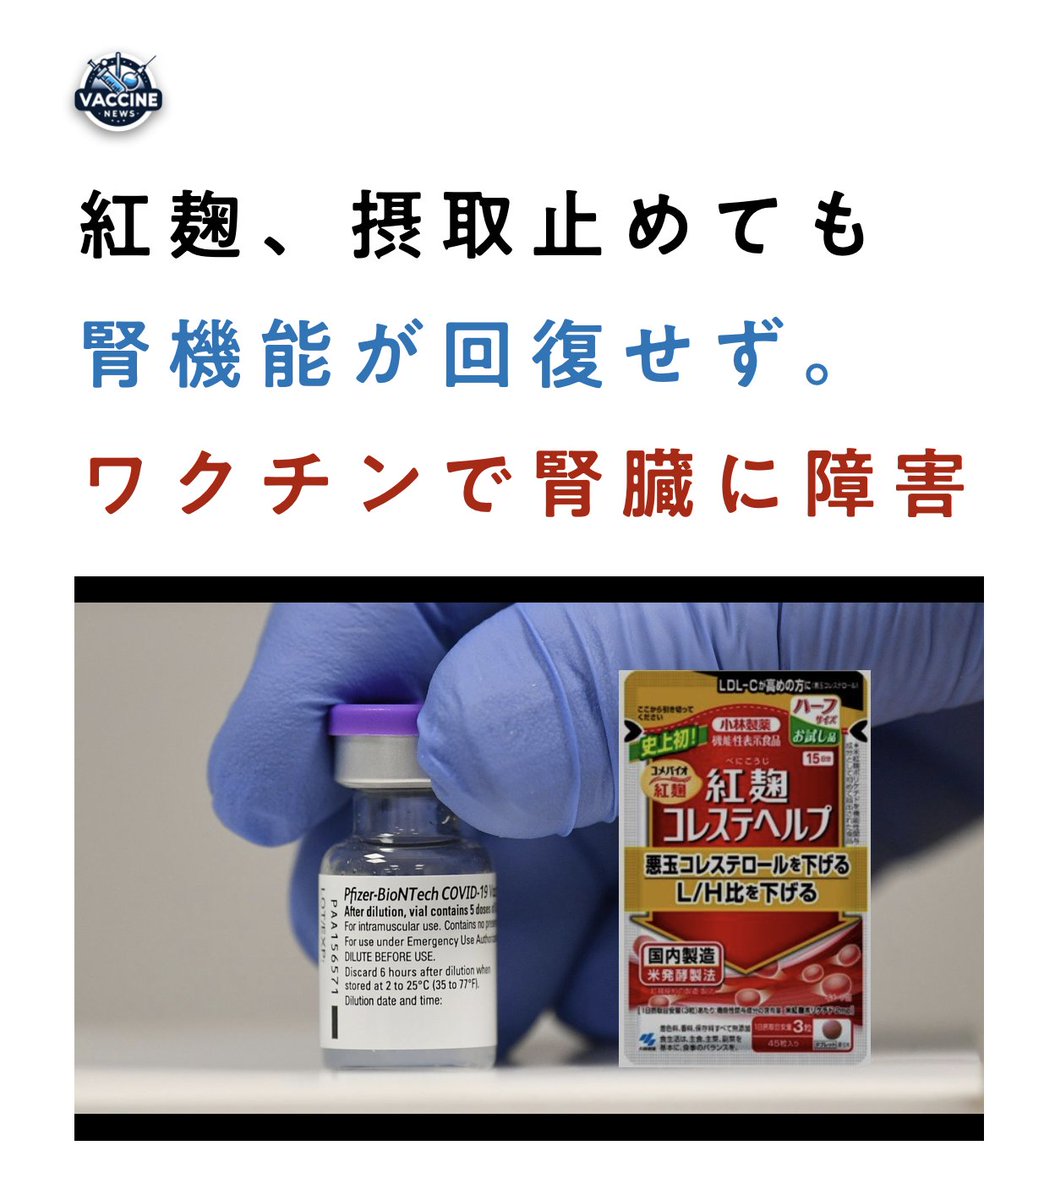 病院「何らかの有害成分 によるダメージが残っている」 ワクチンです。ひどい話だね。 news.yahoo.co.jp/articles/dc52f…